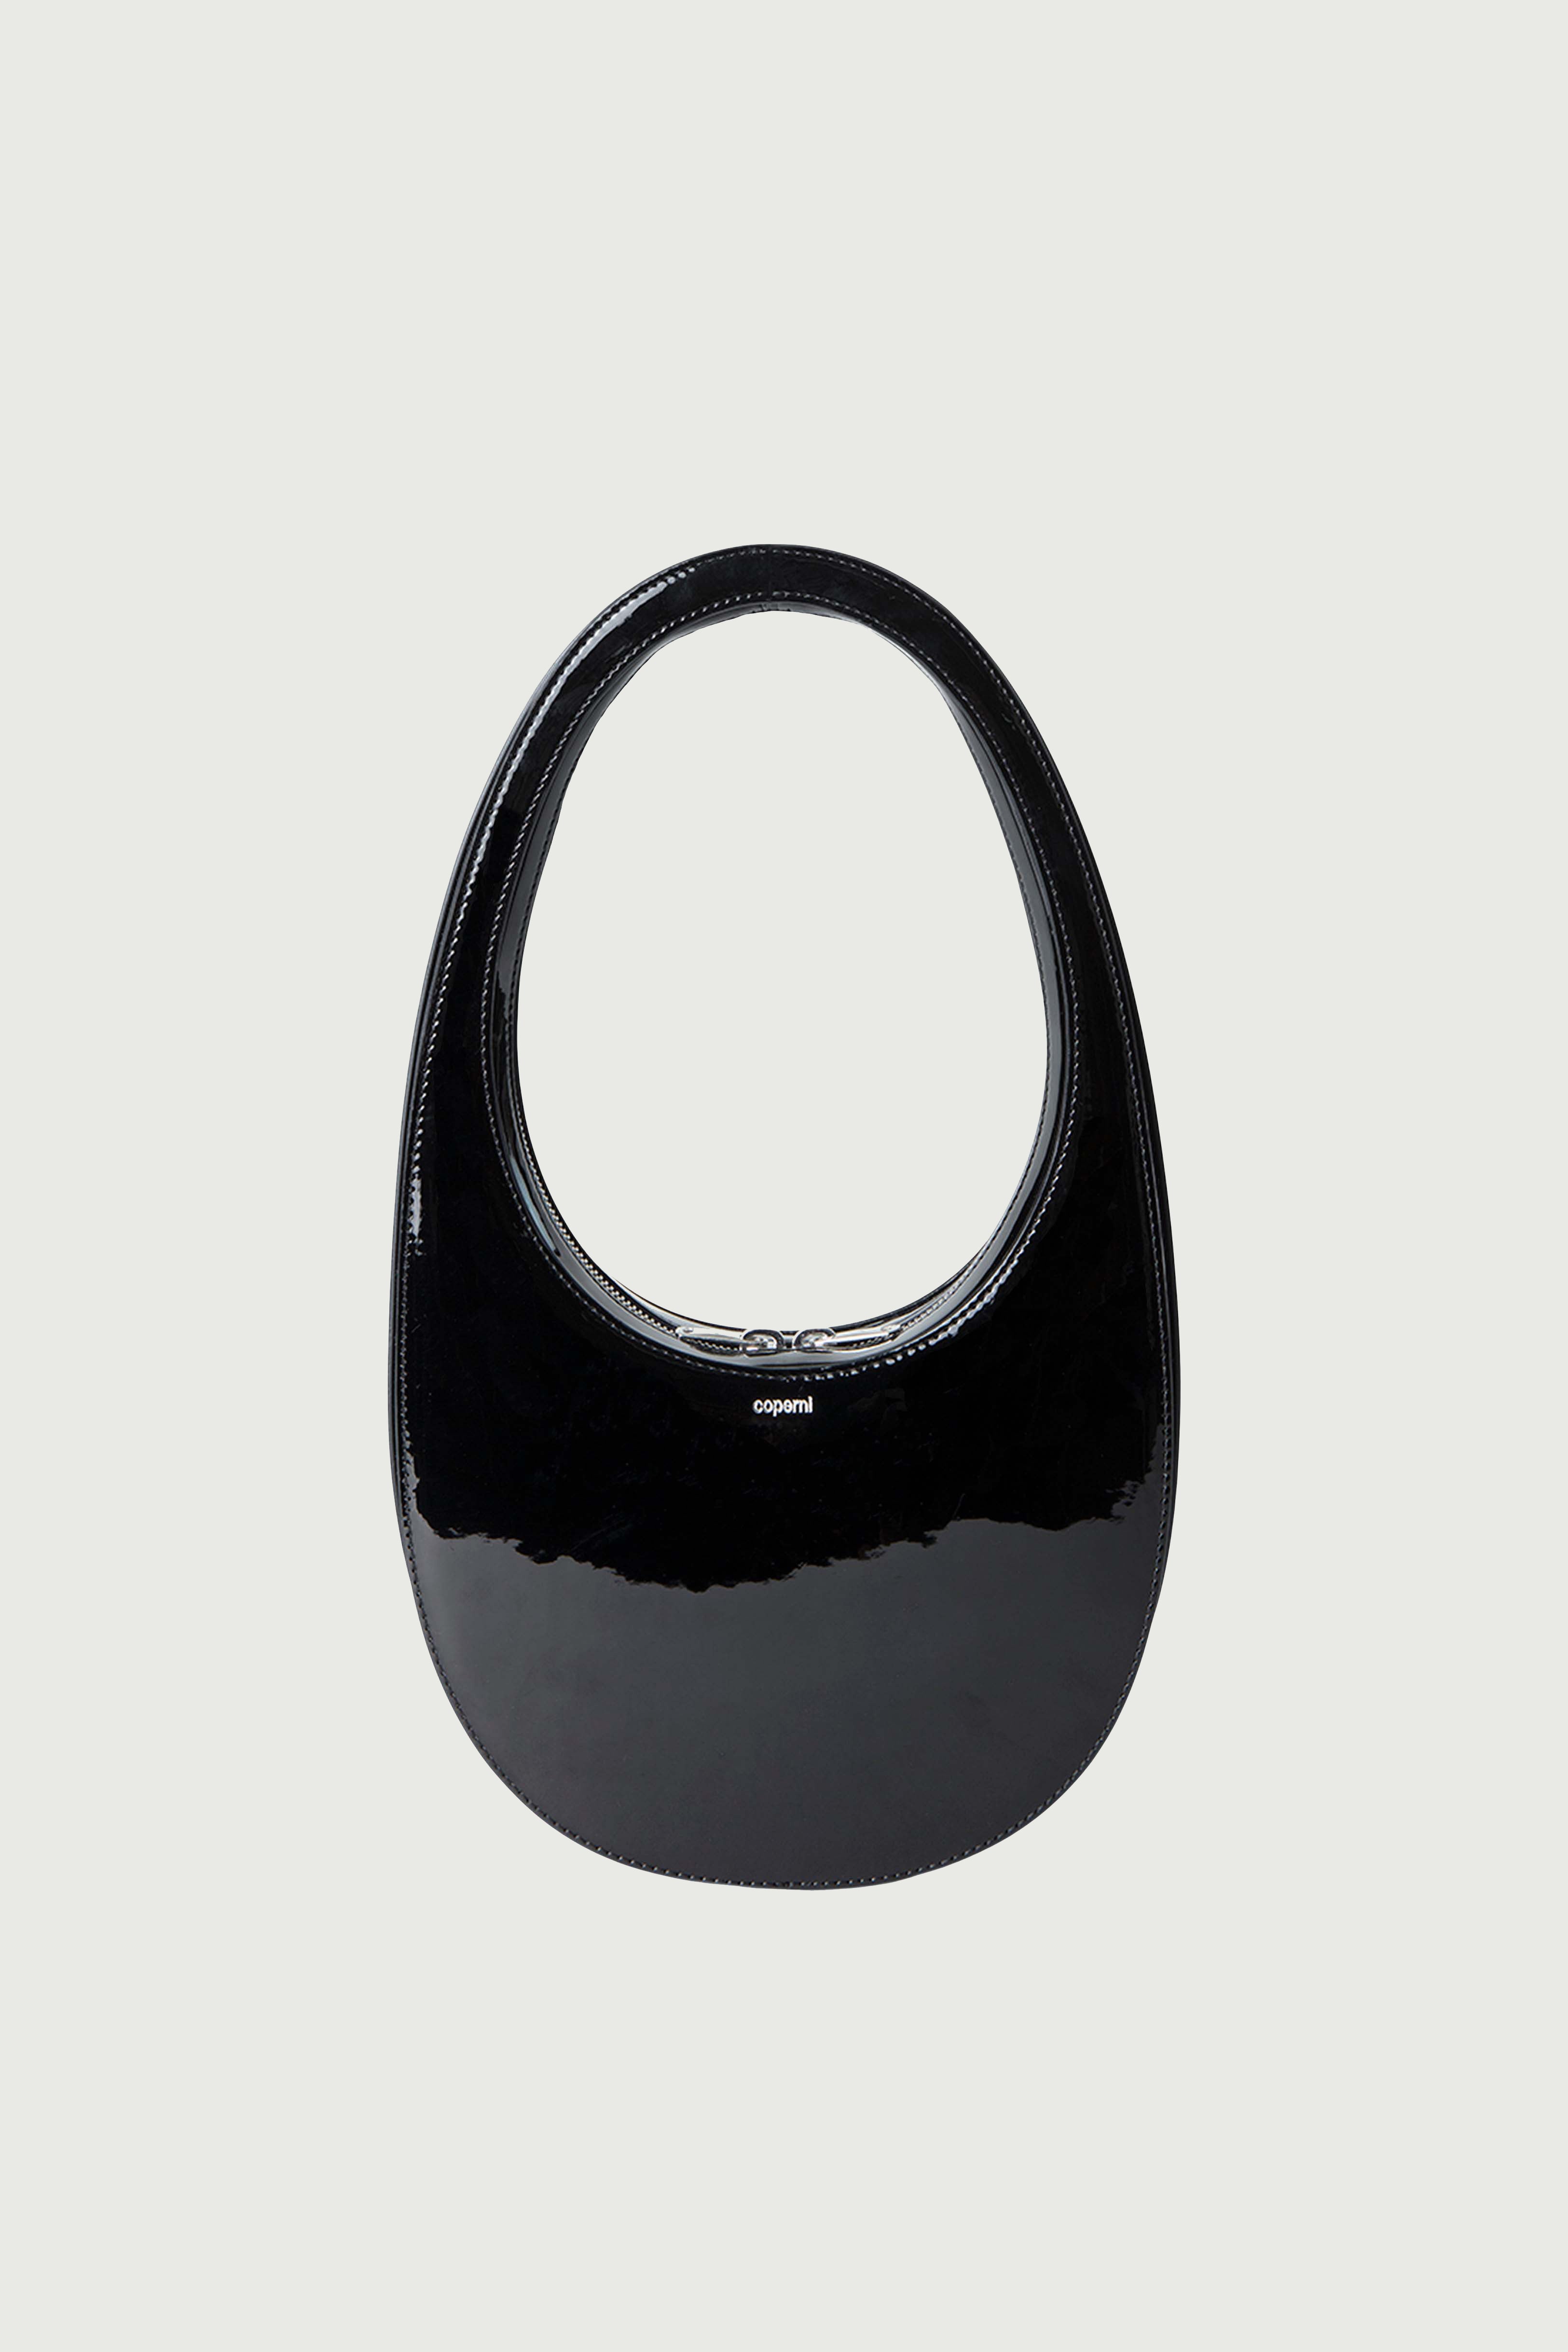 Coperni bags for women | Ratti Boutique